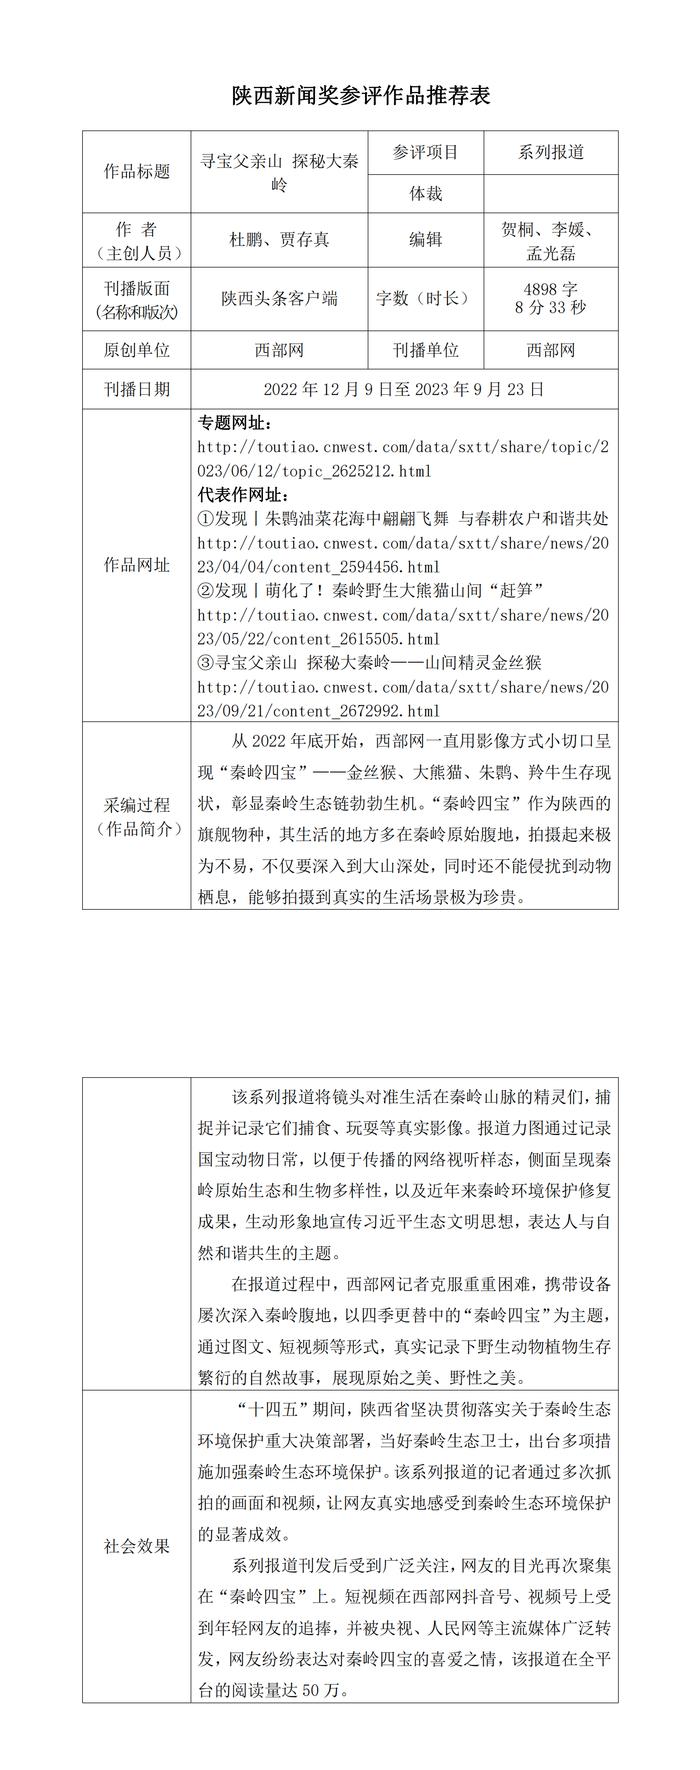 西部网关于申报2023年度陕西新闻奖作品的公示